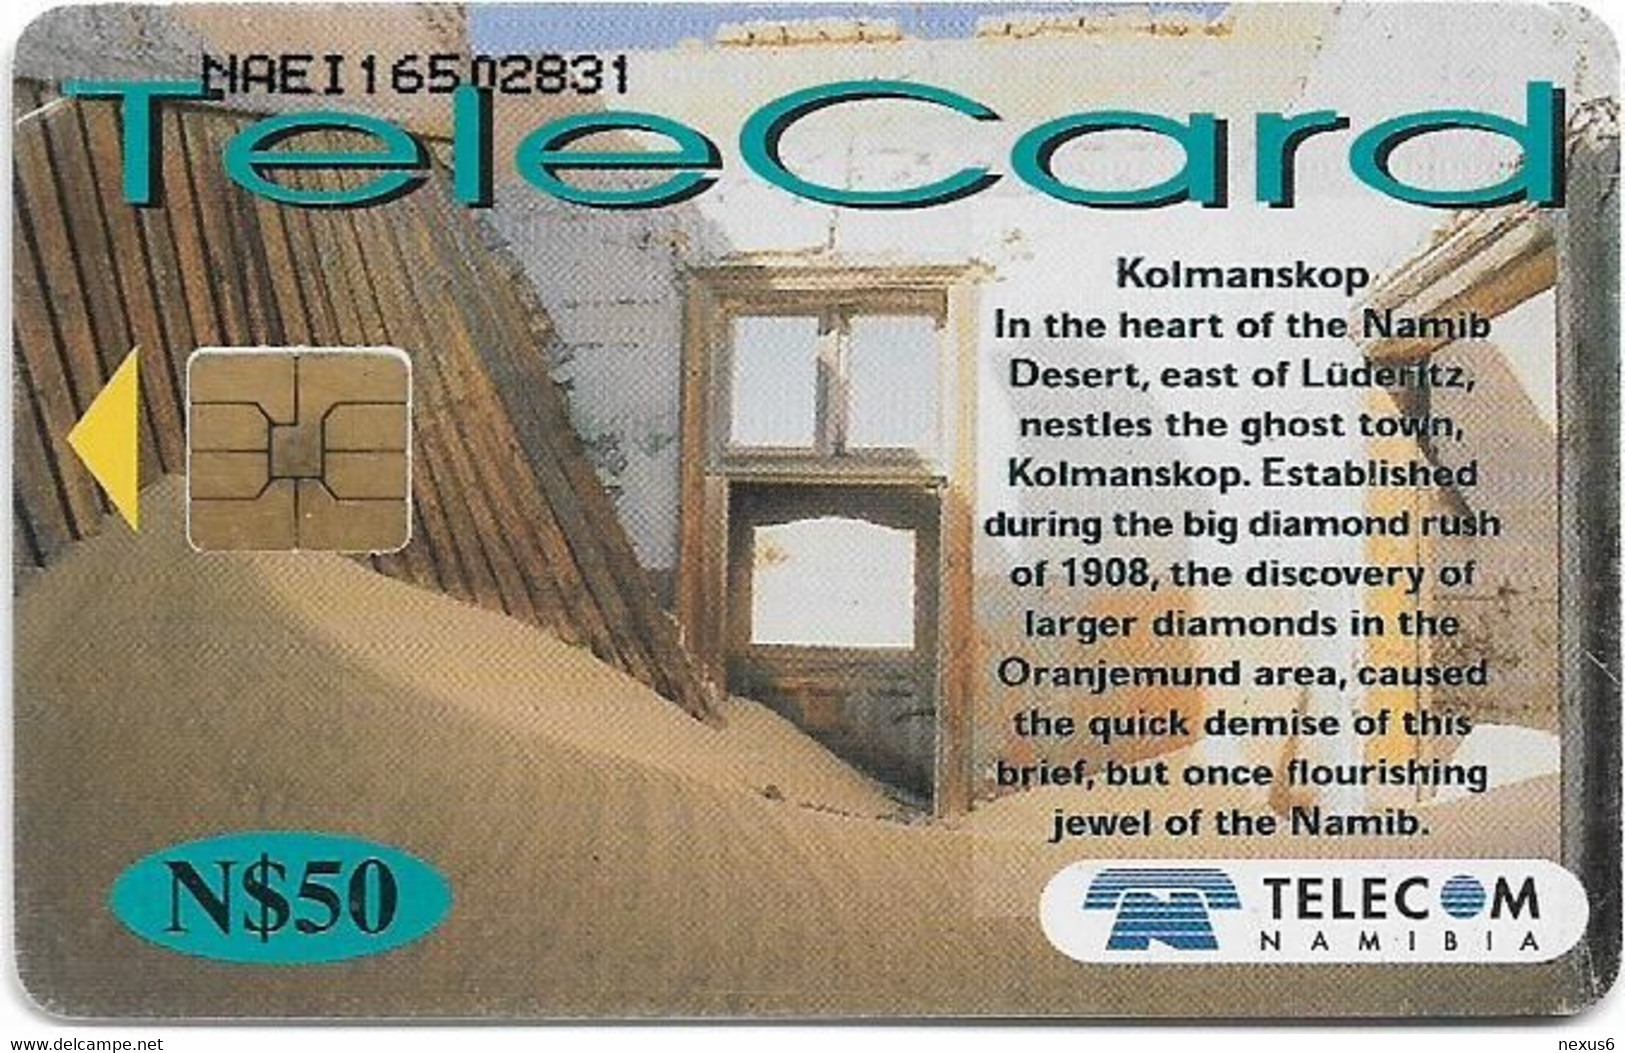 Namibia - Telecom Namibia - Places Of Interest, Kolmanskop, 2001, 50$, Used - Namibia